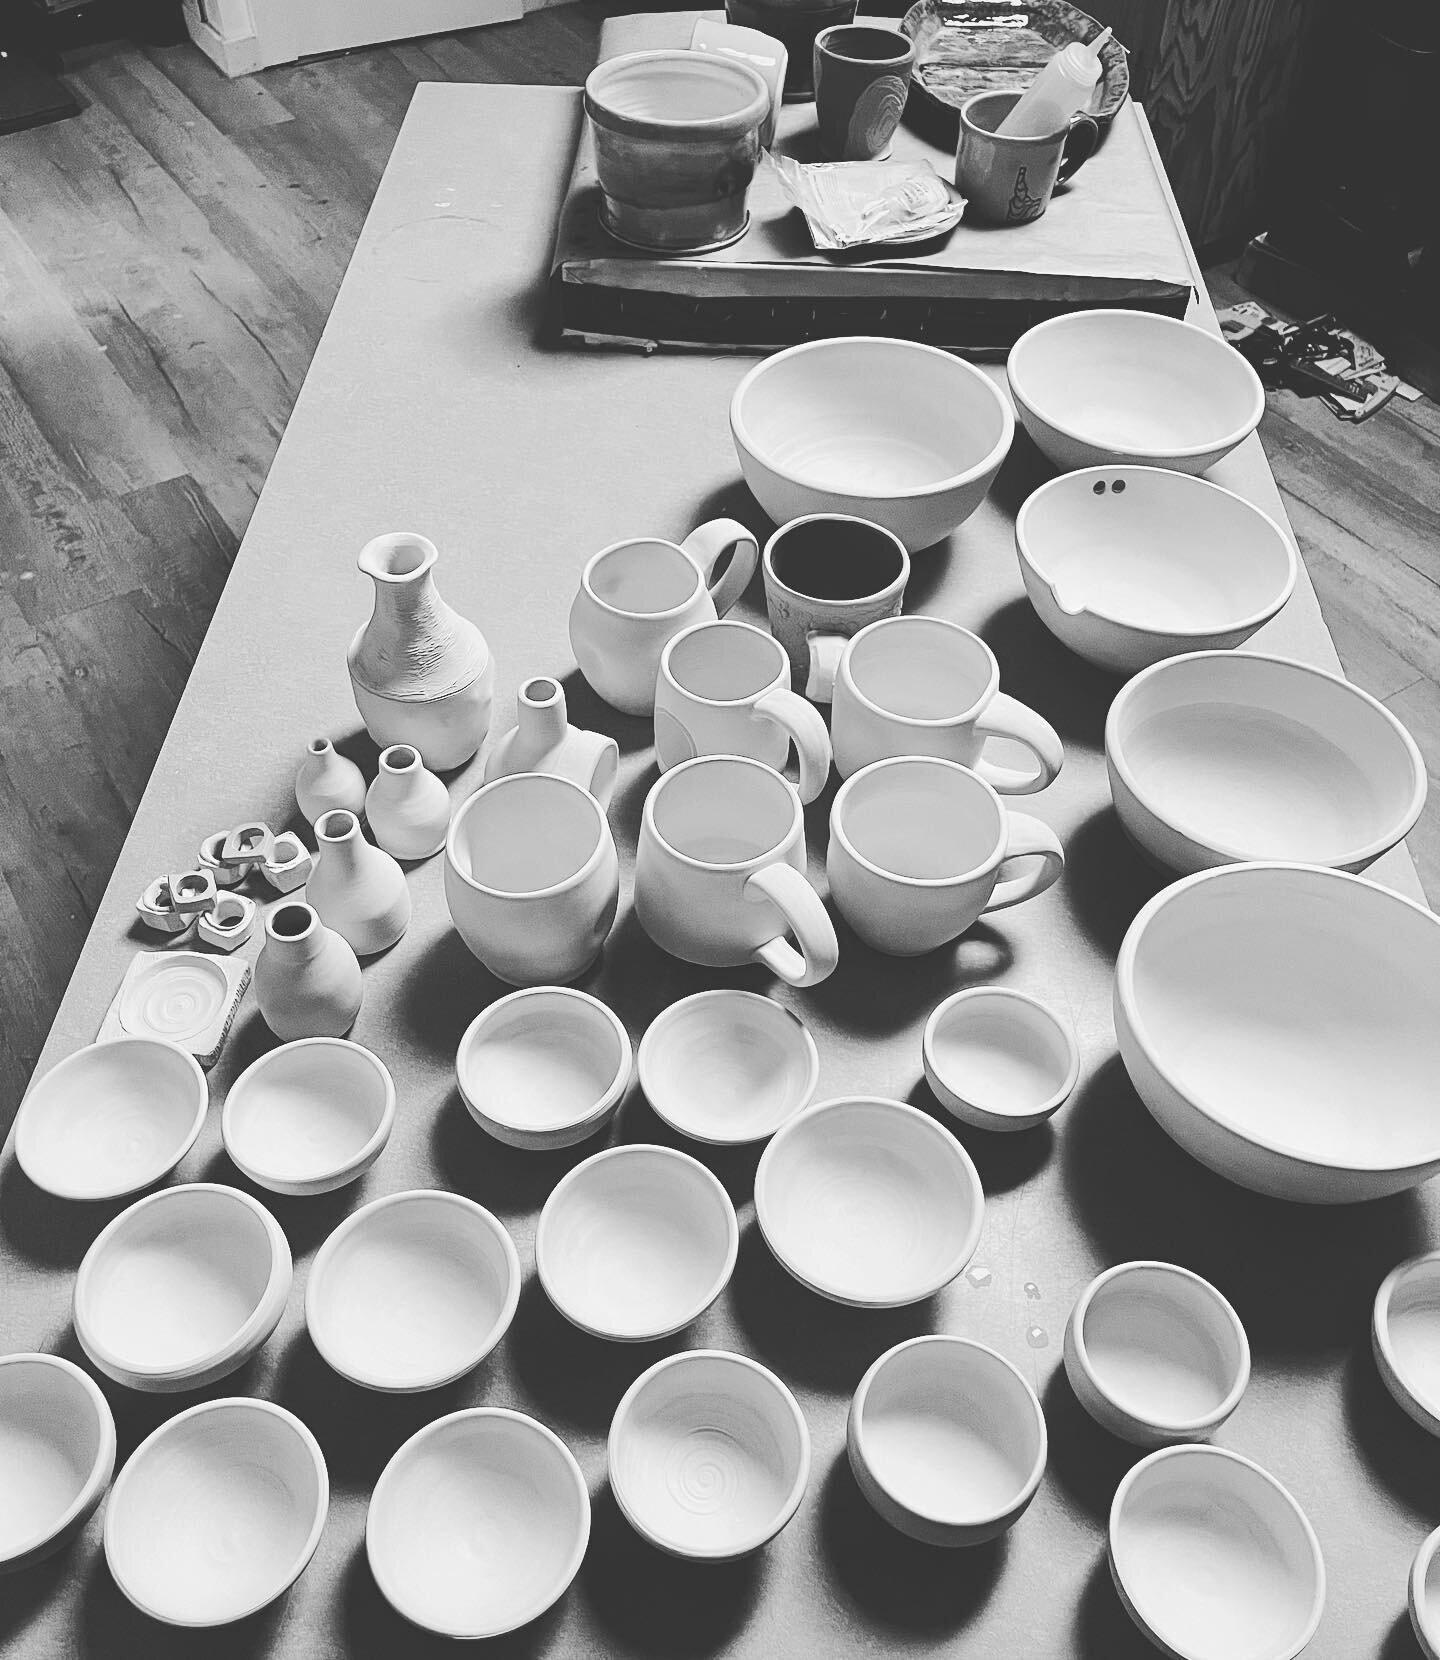 Sunday plans = glazing
#pottery 
#boisemudworks